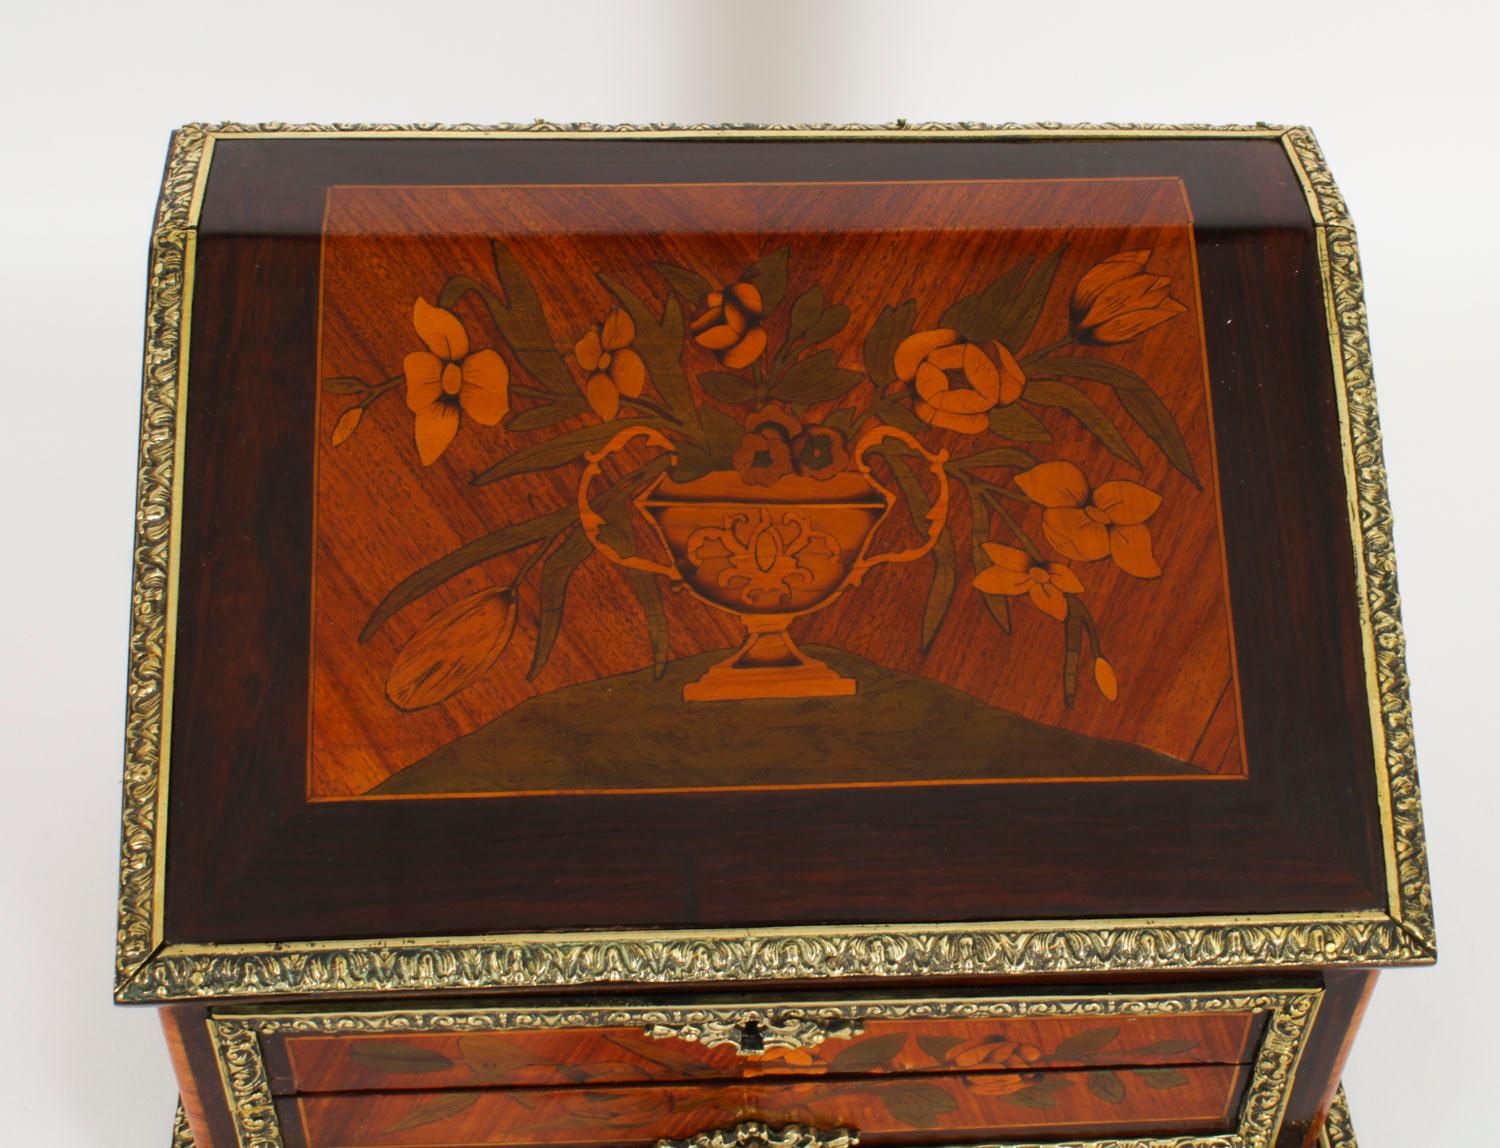 Il s'agit d'un magnifique coffret français ancien en marqueterie de Gonçalo Alves et monté en bronze doré, datant d'environ 1860.

Le coffret, de forme A, se soulève et est incrusté d'un vase à fleurs en marqueterie.  qui s'ouvre sur un intérieur